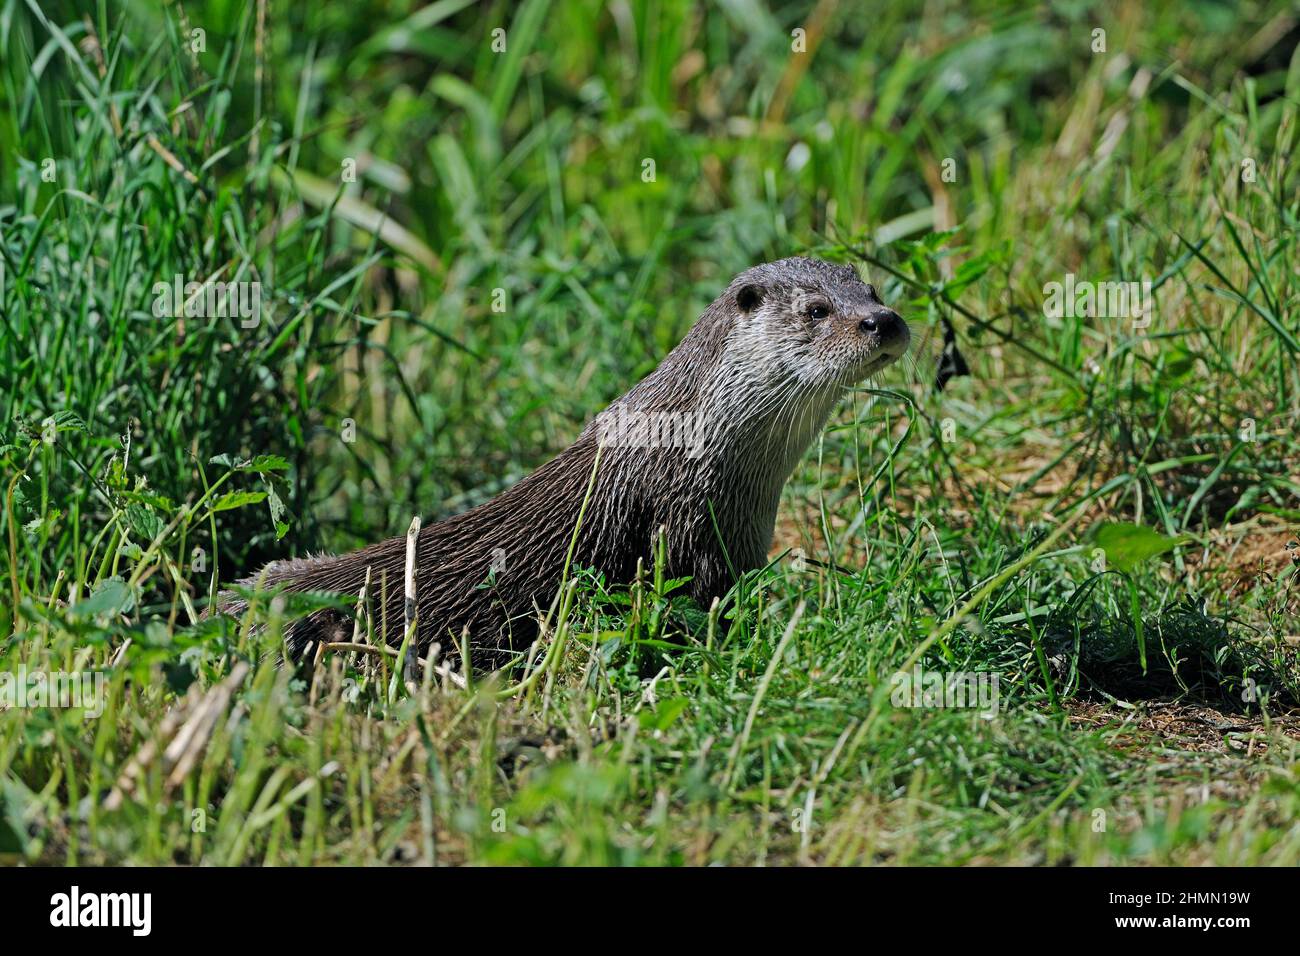 European river otter, European Otter, Eurasian Otter (Lutra lutra), sitting on grass at the shore, side view, Germany, Brandenburg Stock Photo